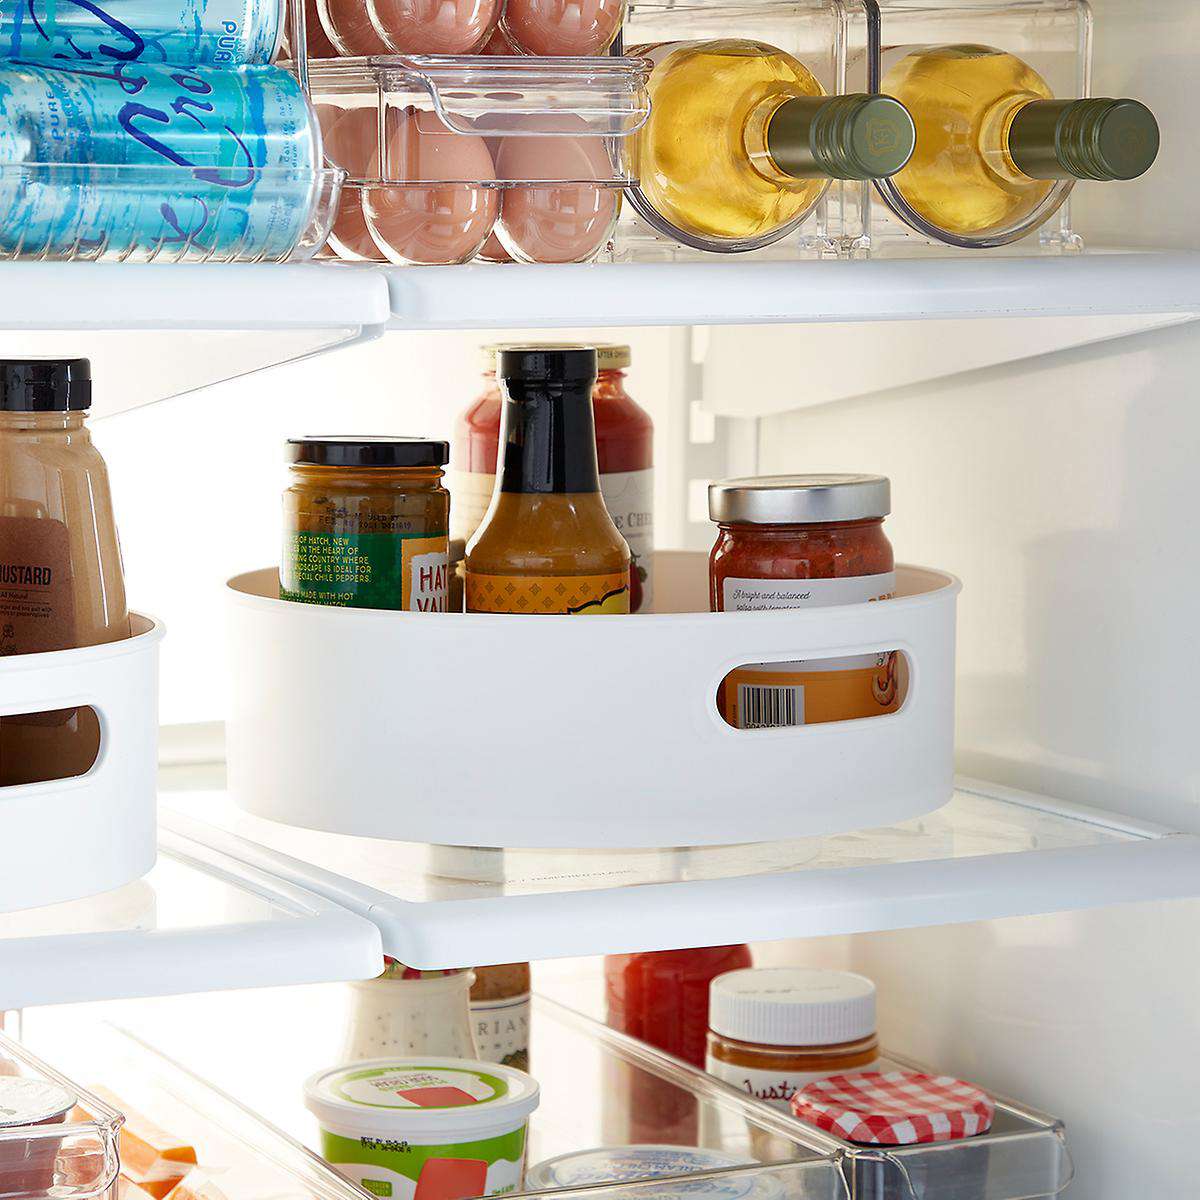 Soda Can Storage Box Kitchen Fridge Drink Bottle Holder Refrigerator Organizer